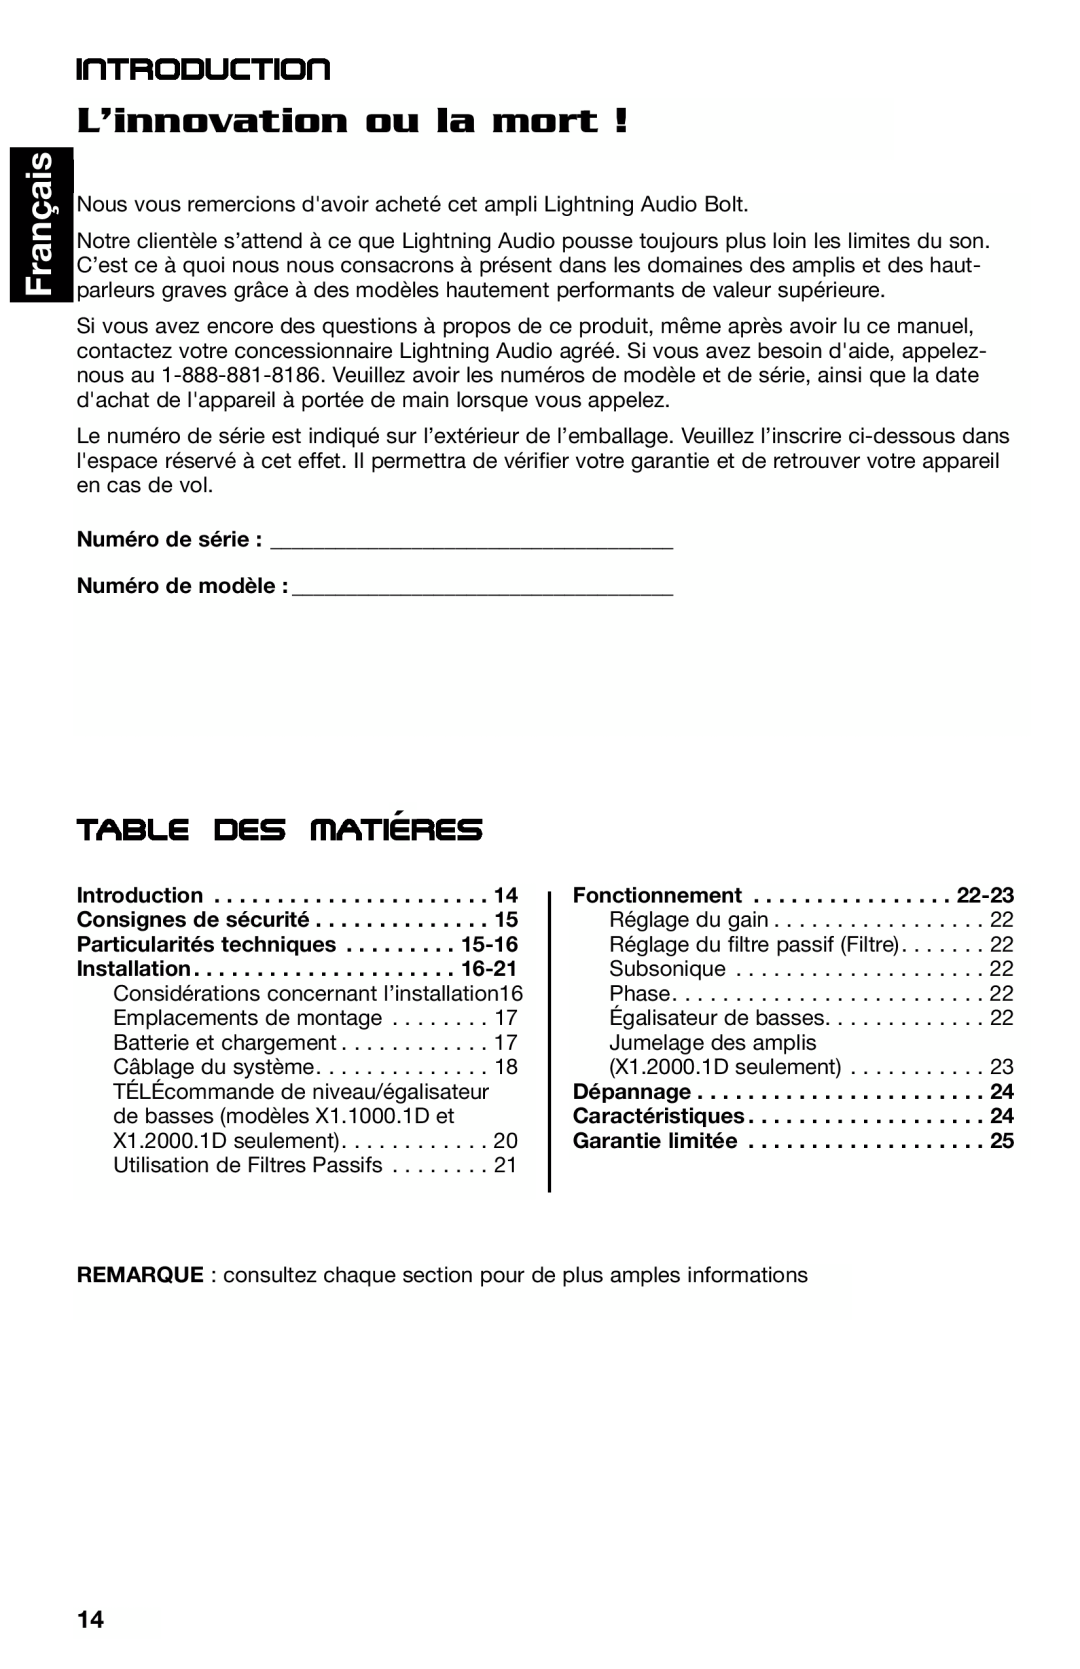 Lightning Audio X1.2000.1D, X1.800.4, X1.400.2 manual L’innovation ou la mort, Français, Table des matieres´, Introduction 